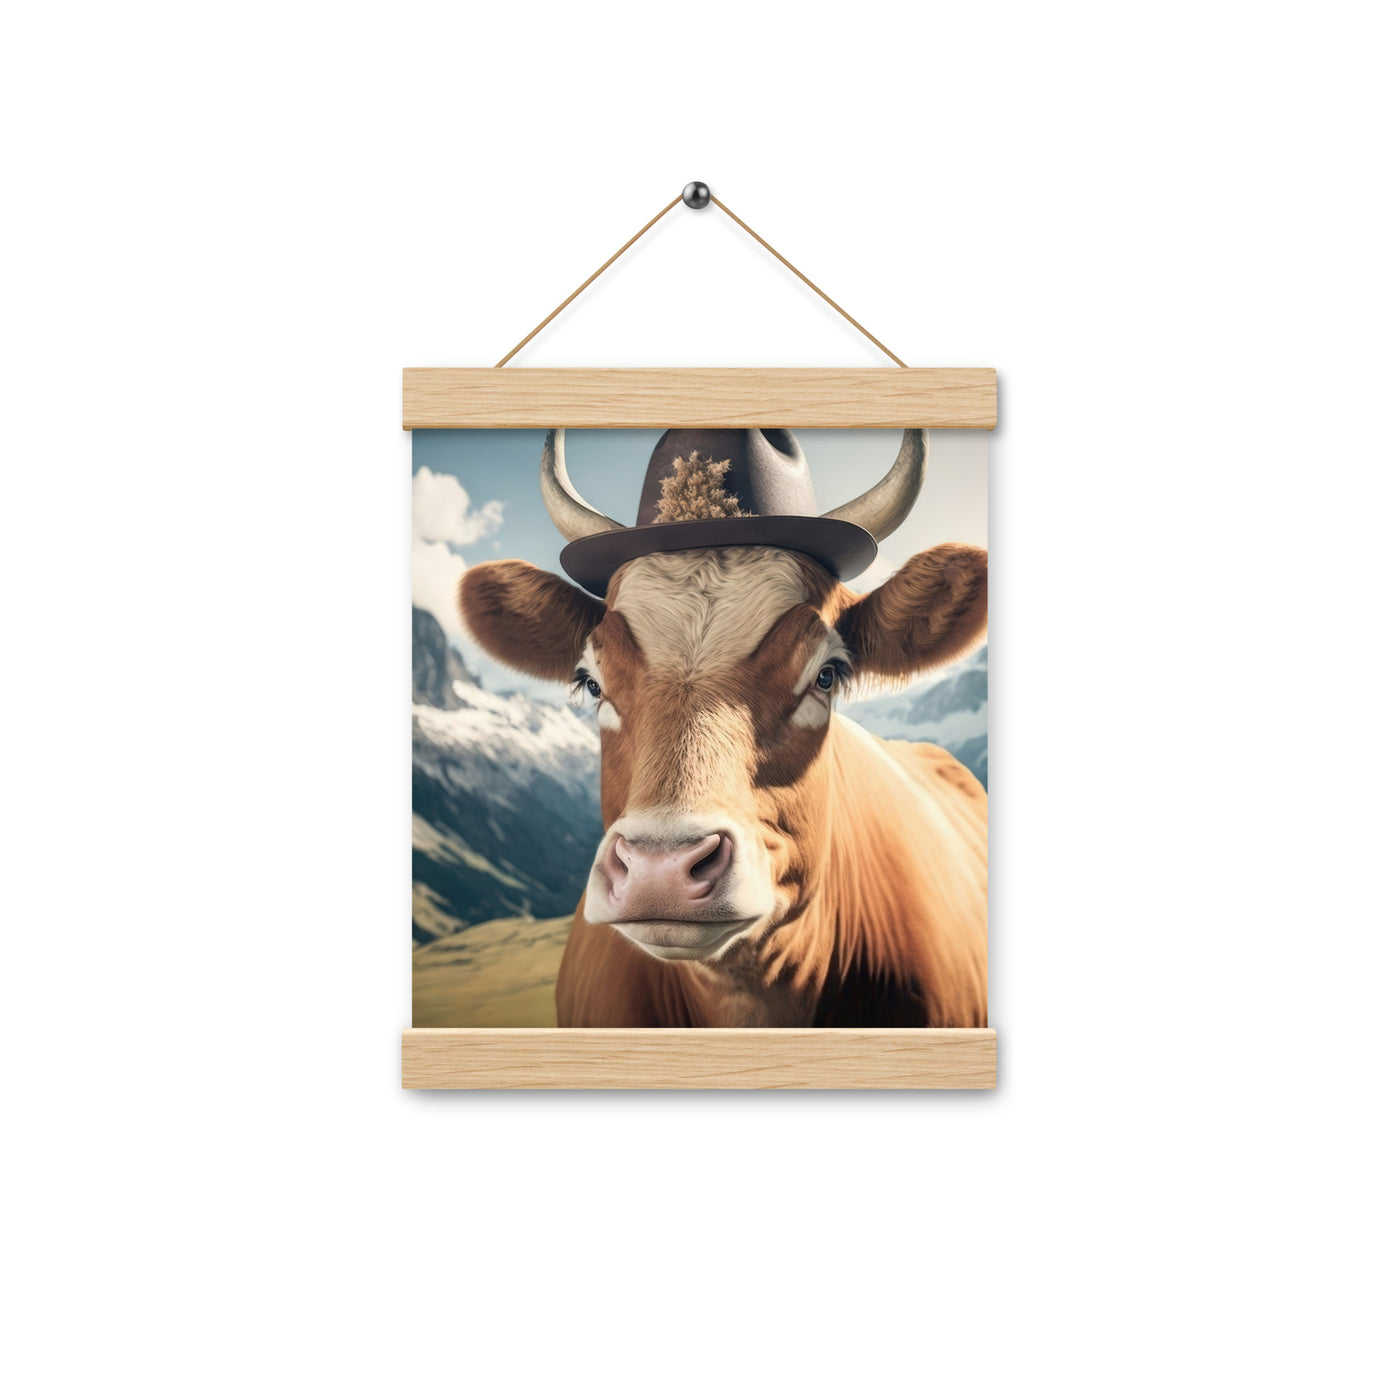 Kuh mit Hut in den Alpen - Berge im Hintergrund - Landschaftsmalerei - Premium Poster mit Aufhängung berge xxx Oak 20.3 x 25.4 cm